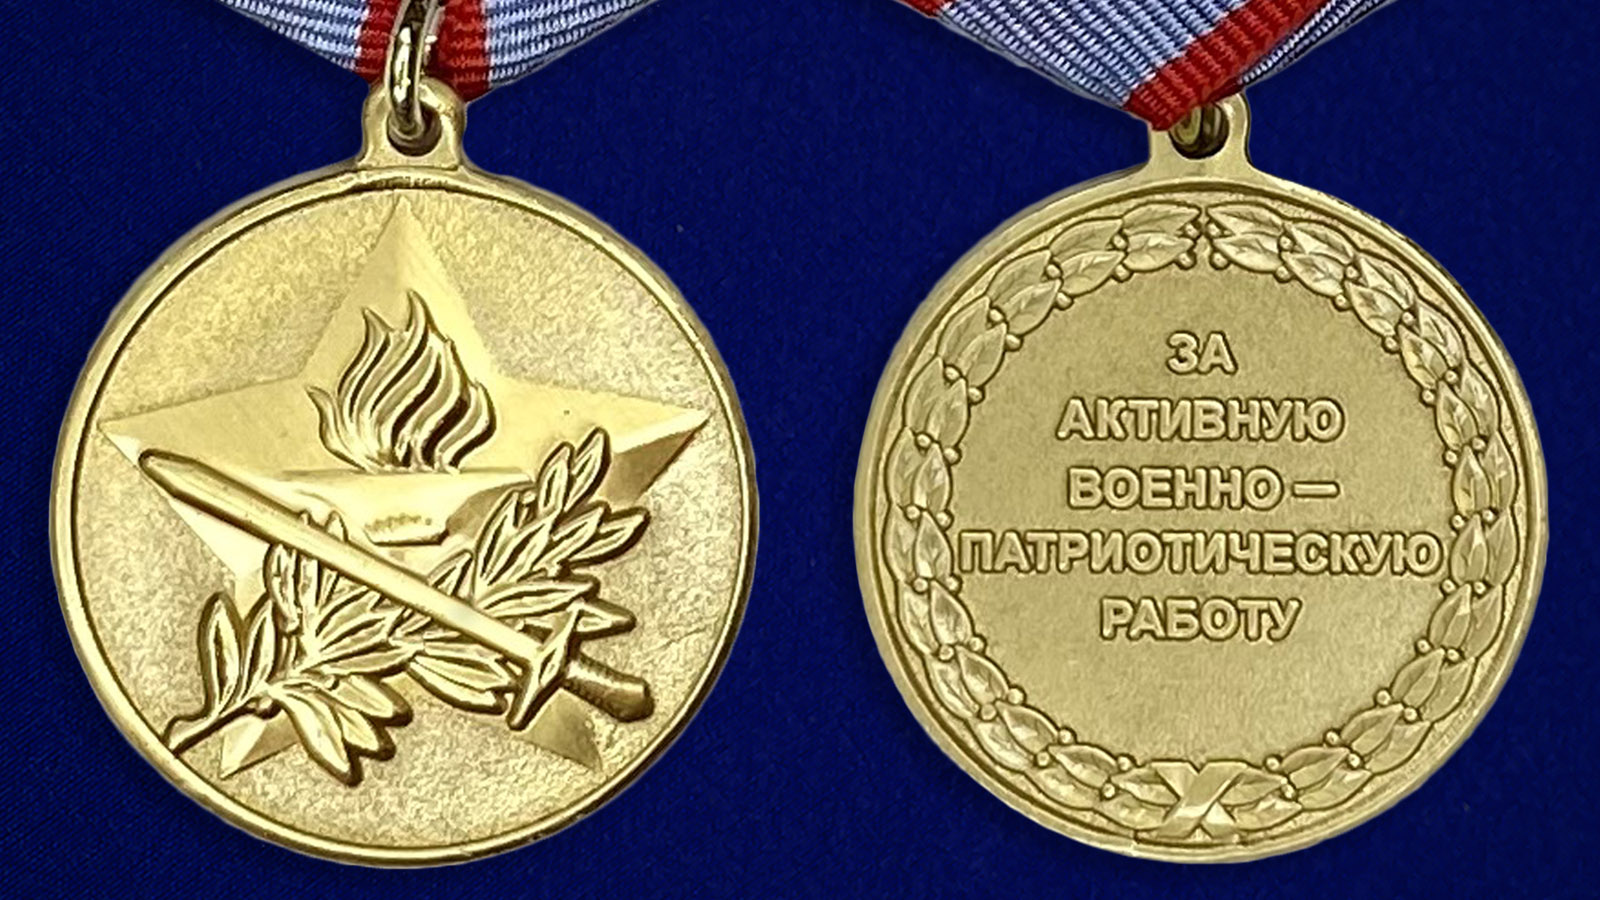 Описание медали "За активную военно-патриотическую работу" - аверс и реверс